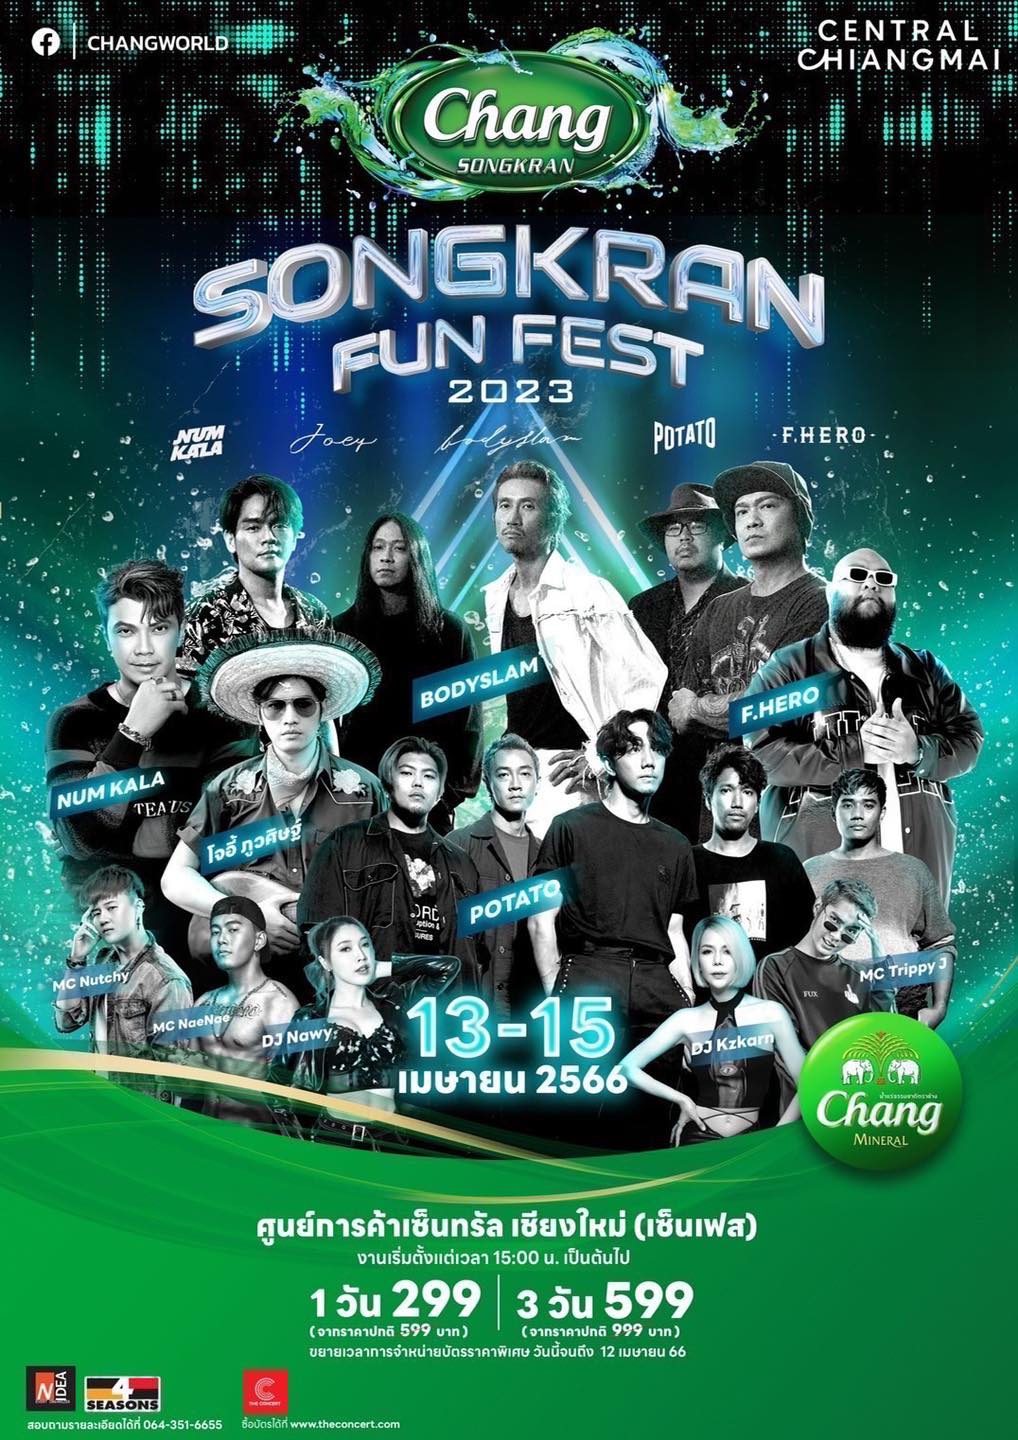 Songkran Fun Fest 2023